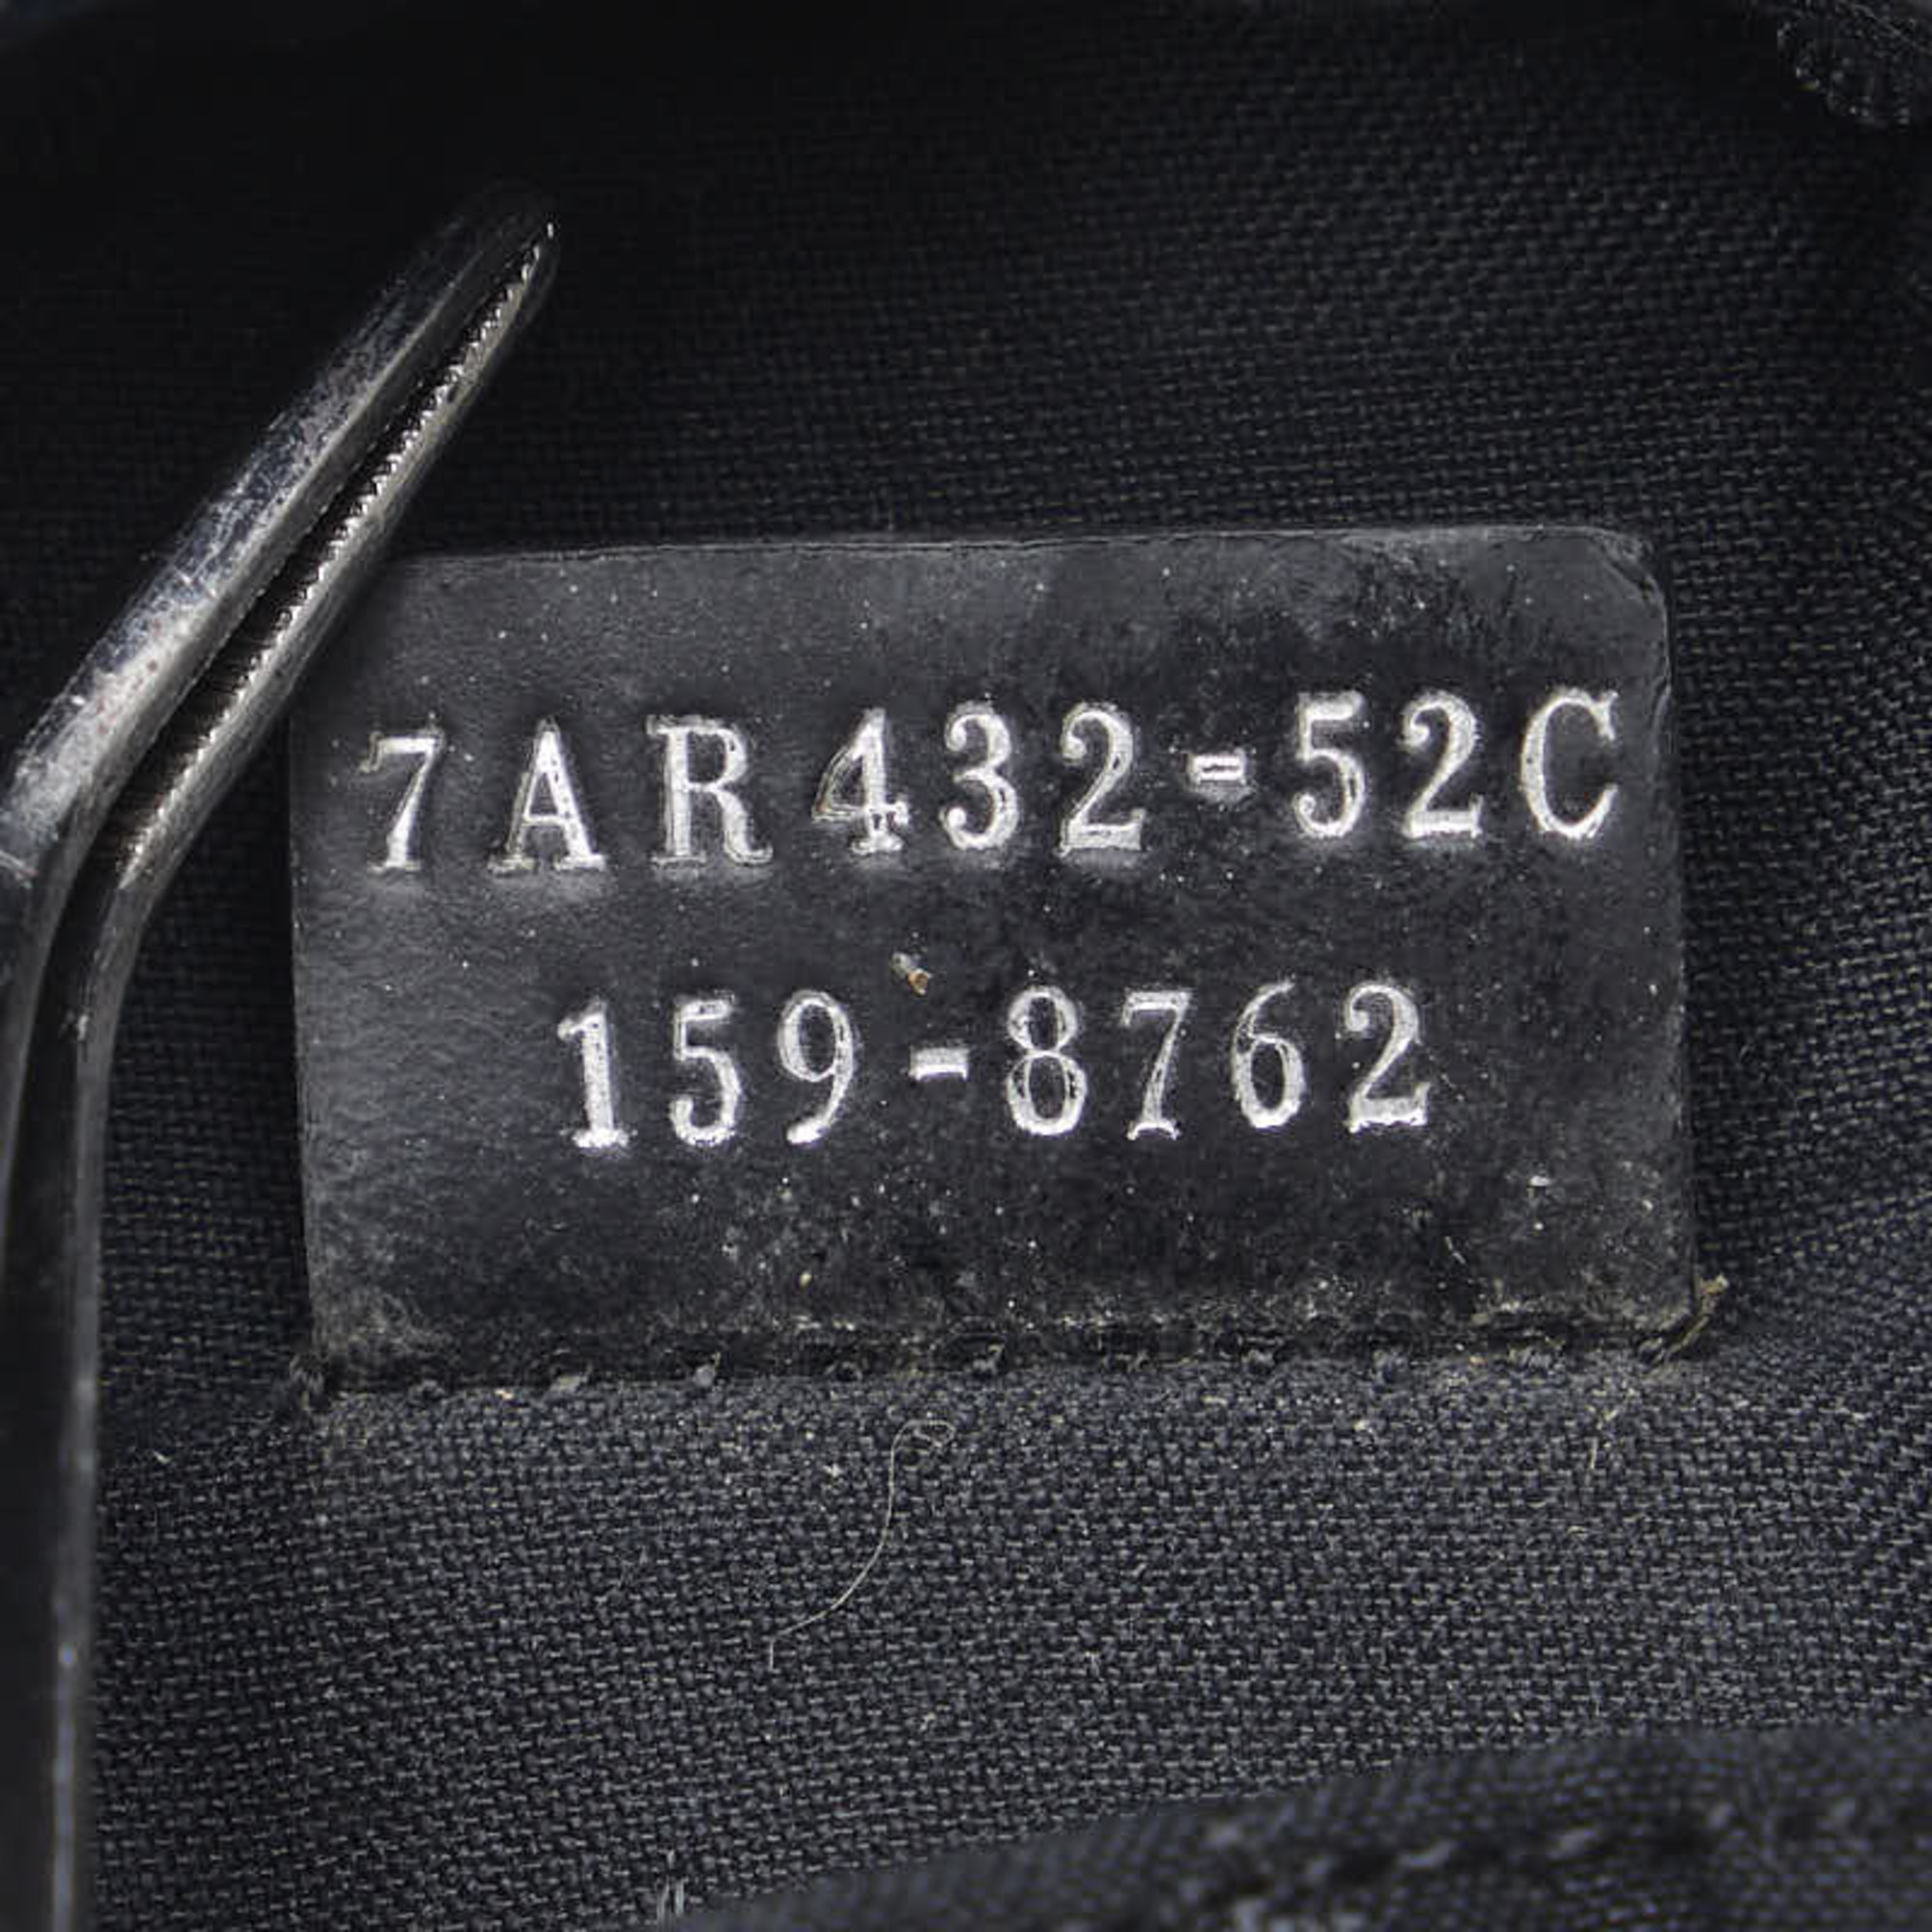 FENDI Backpack Bugs Eye Monster Charm 7AR432 Navy Black Nylon Leather Ladies